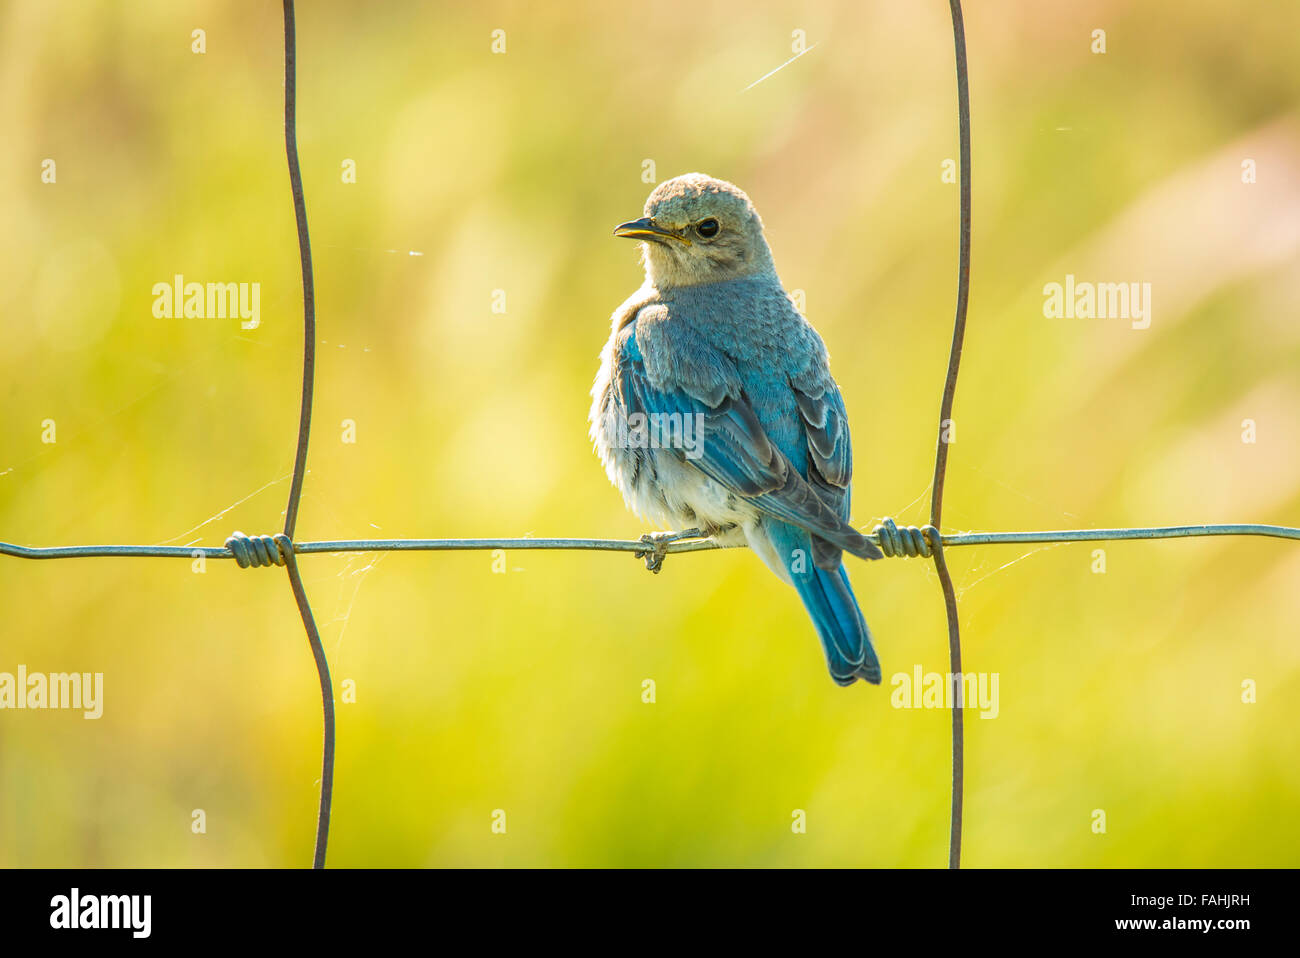 Les oiseaux, Mountain Blue Bird, jeune jeune oiseau bleu perché sur la clôture. Oiseau d'état de l'Idaho, Oregon, USA Banque D'Images